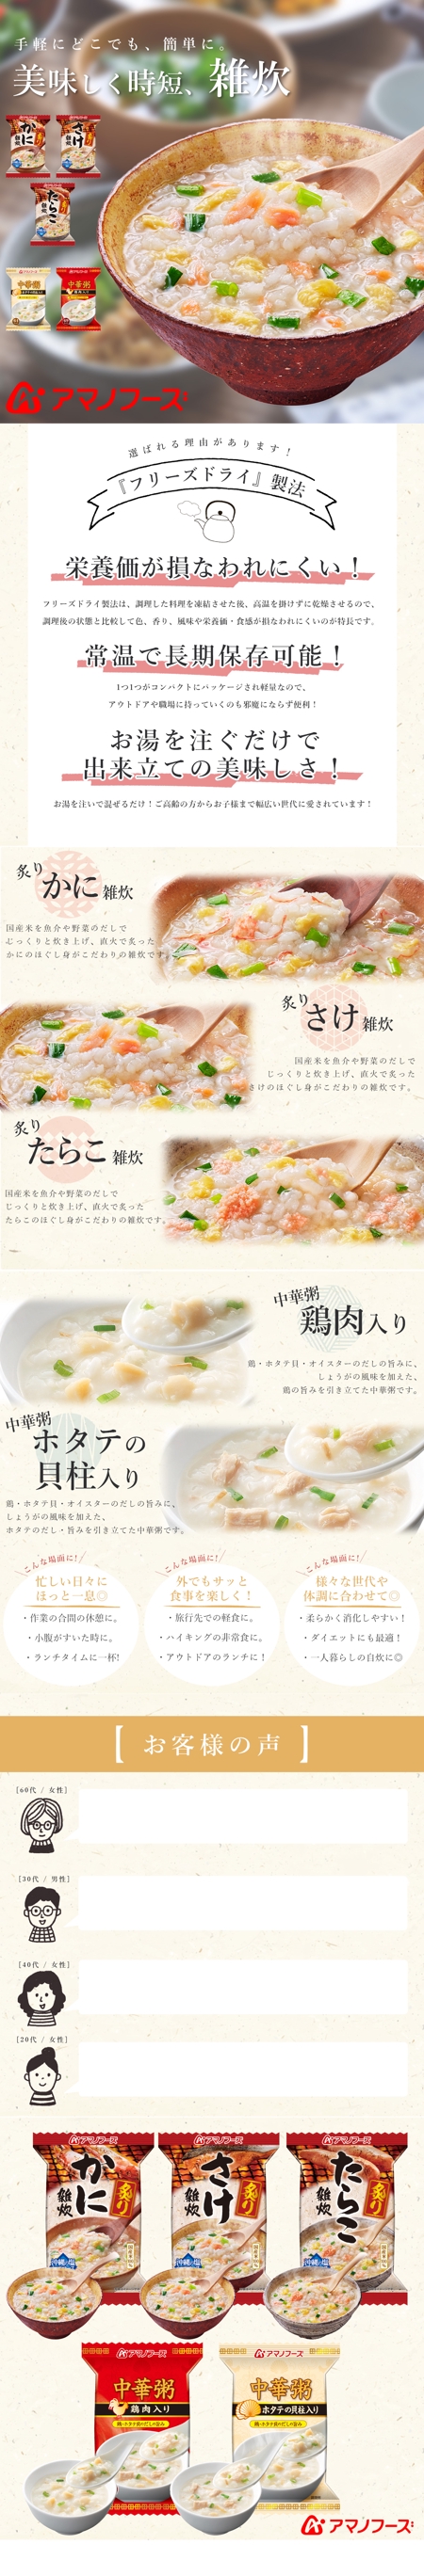 KANATA (kanata_zzcz)さんの食品販売ECの商品ページ画像の作成（amano-abuzo-5-15）への提案